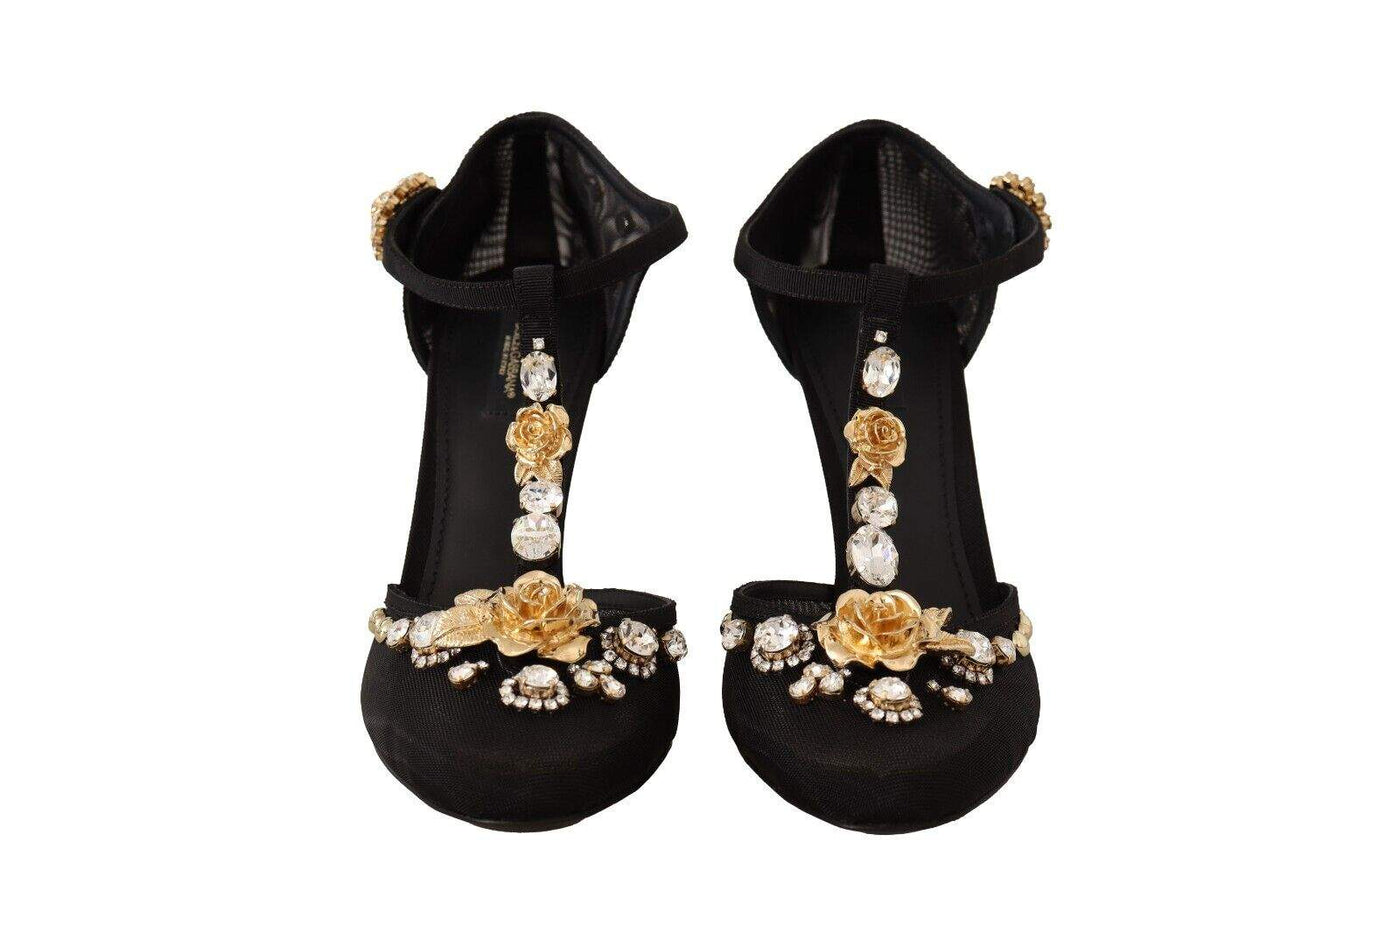 Dolce & Gabbana Black Mesh Crystals T-strap Heels Pumps Shoes Black, Dolce & Gabbana, EU39/US8.5, EU40/US9.5, EU41/US10.5, feed-1, Pumps - Women - Shoes at SEYMAYKA